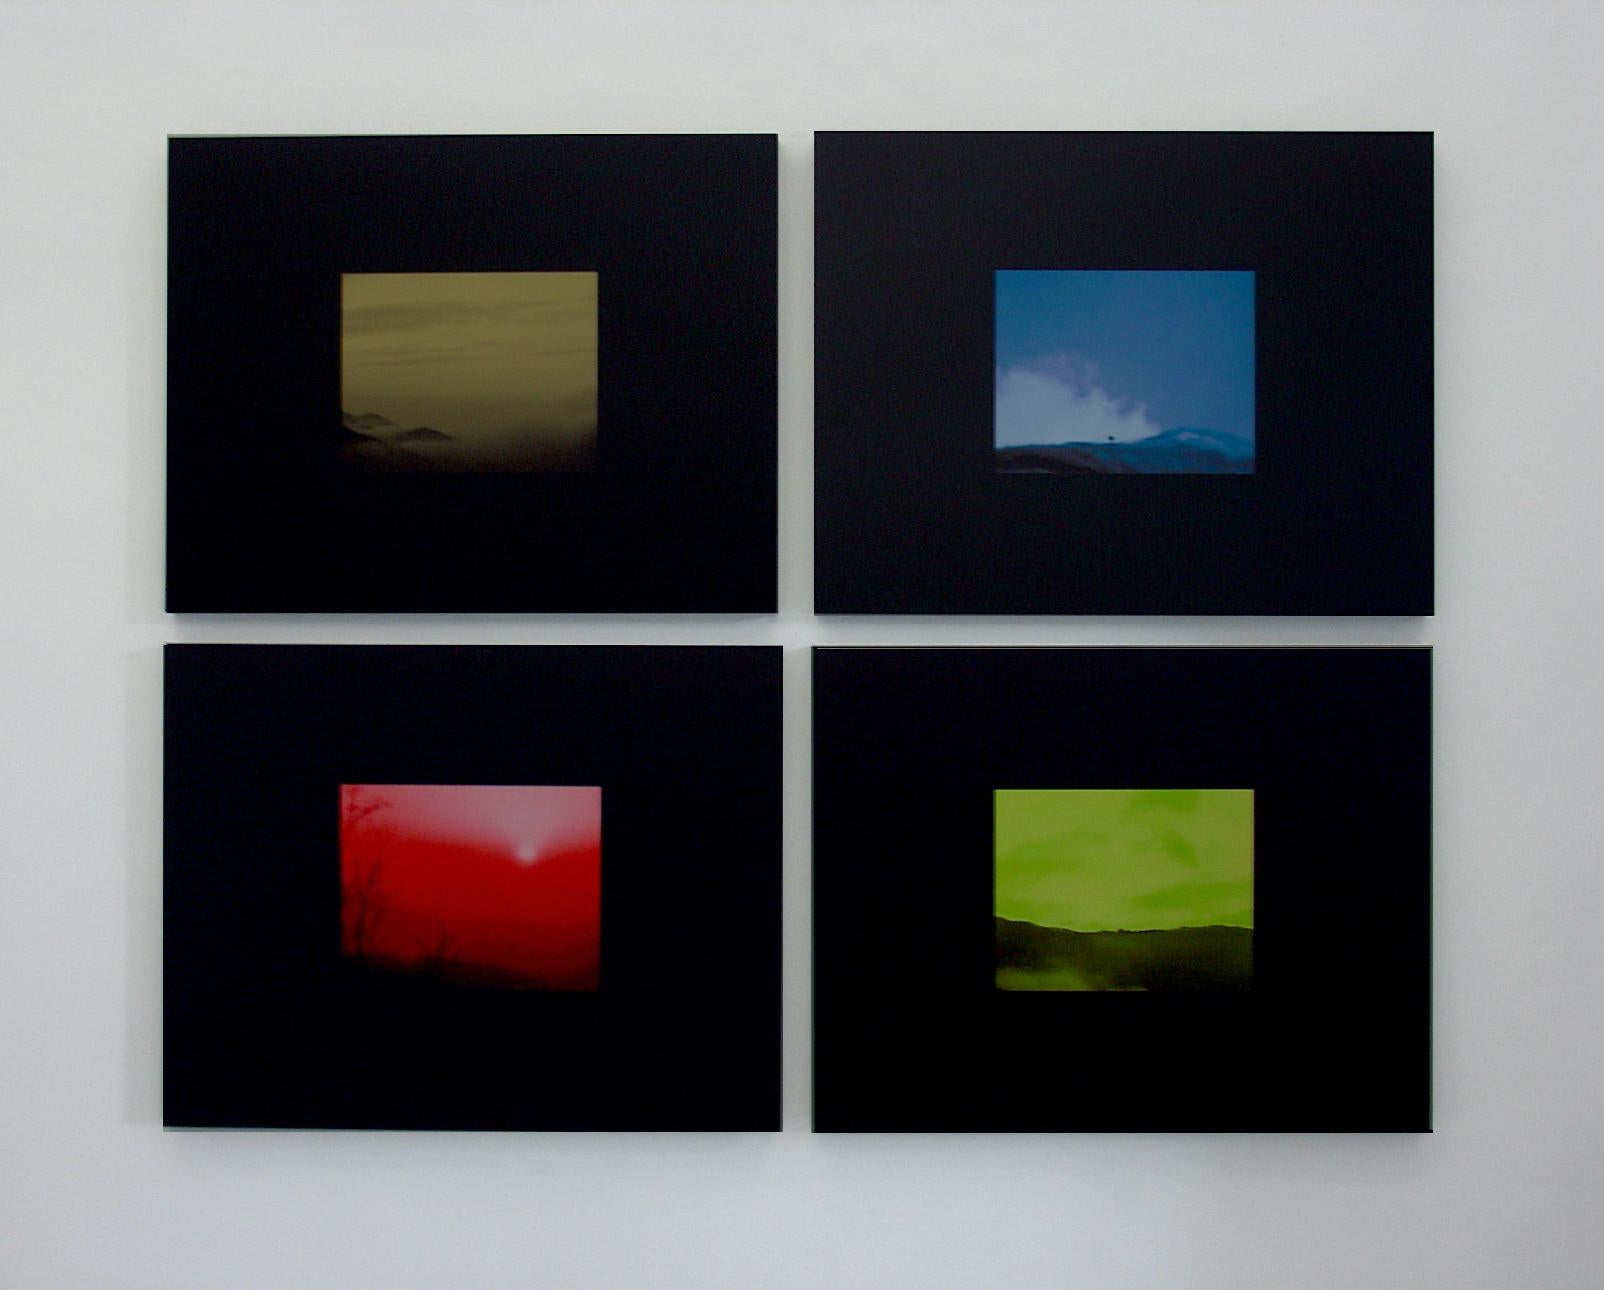 Colour Landscape, 2006 - Black Landscape Photograph by Davide Maria Coltro